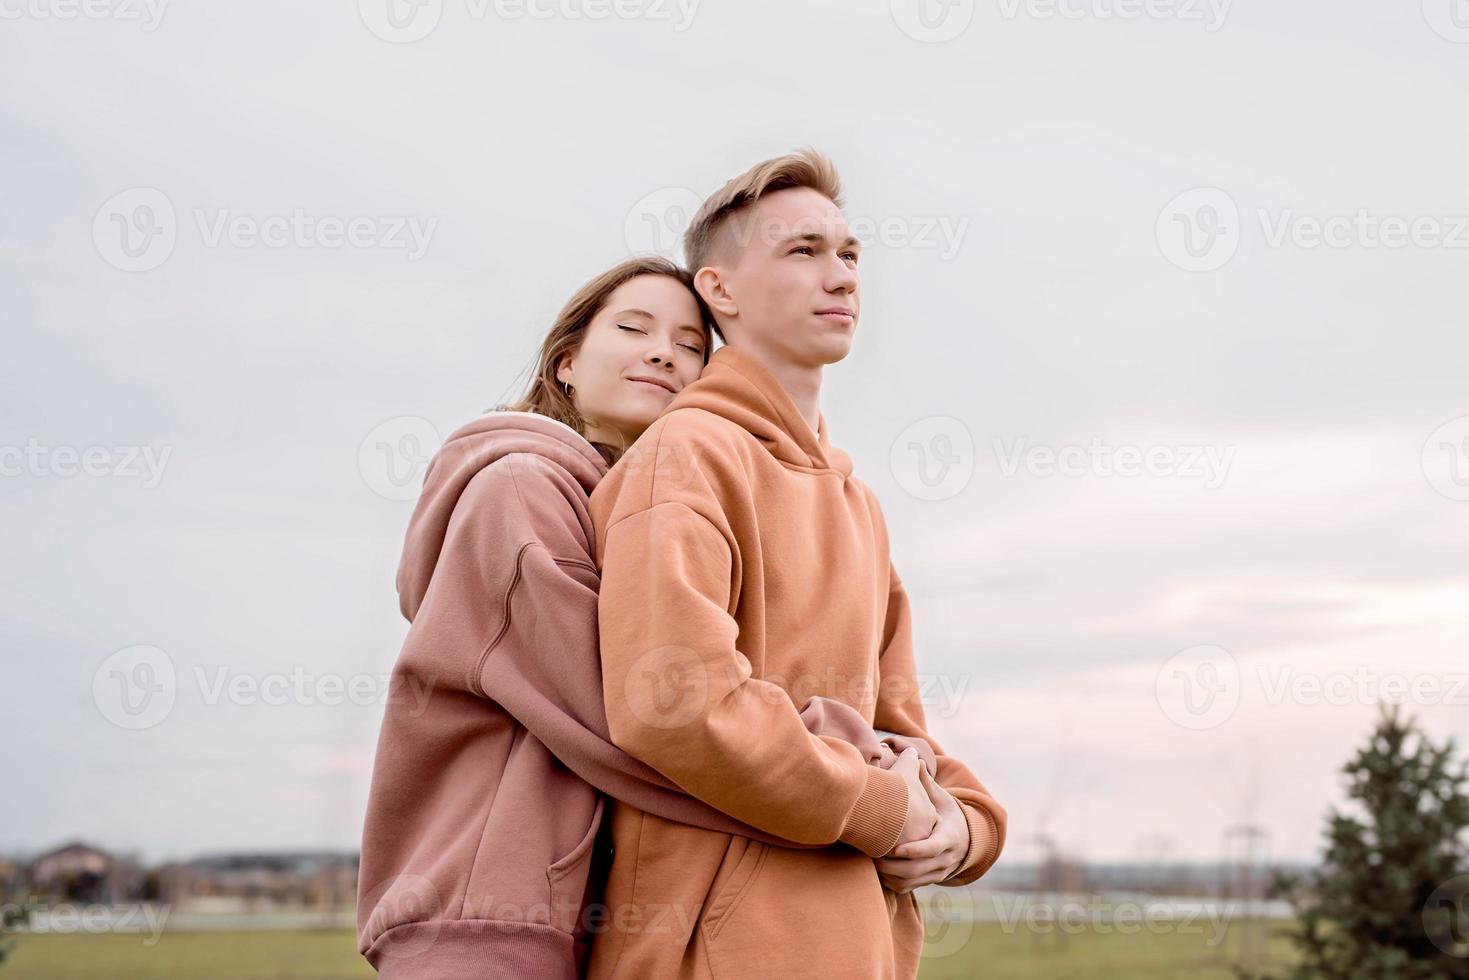 jong liefdevol paar omhelzen elkaar buiten in het park foto